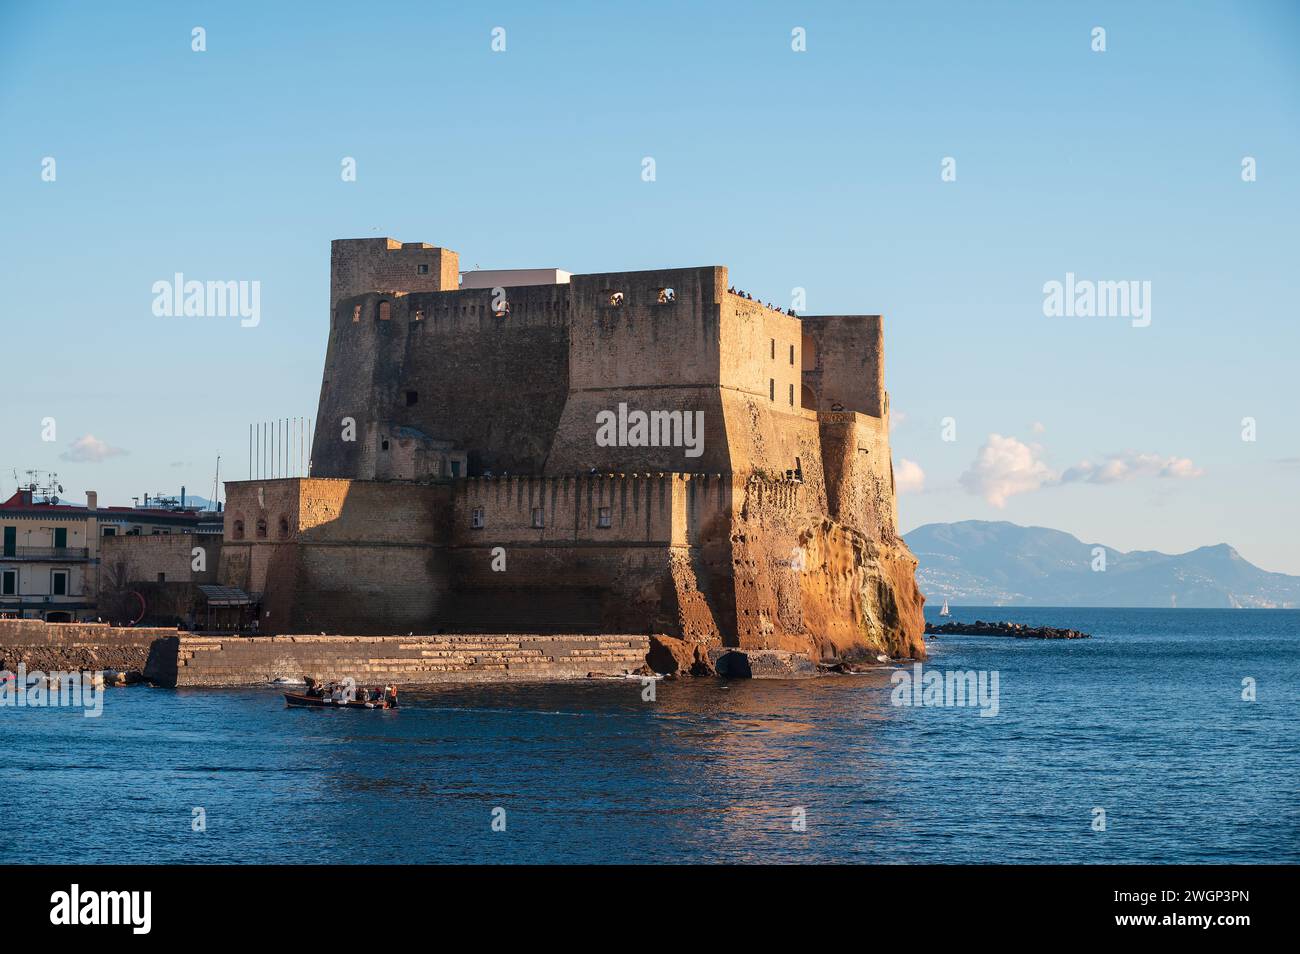 Napoli, Italia - 18 dicembre 2022: Affacciato sul tranquillo golfo di napoli, su un'isola rocciosa sorge con orgoglio un maestoso castello di Ovo. L'iconico Castel Foto Stock